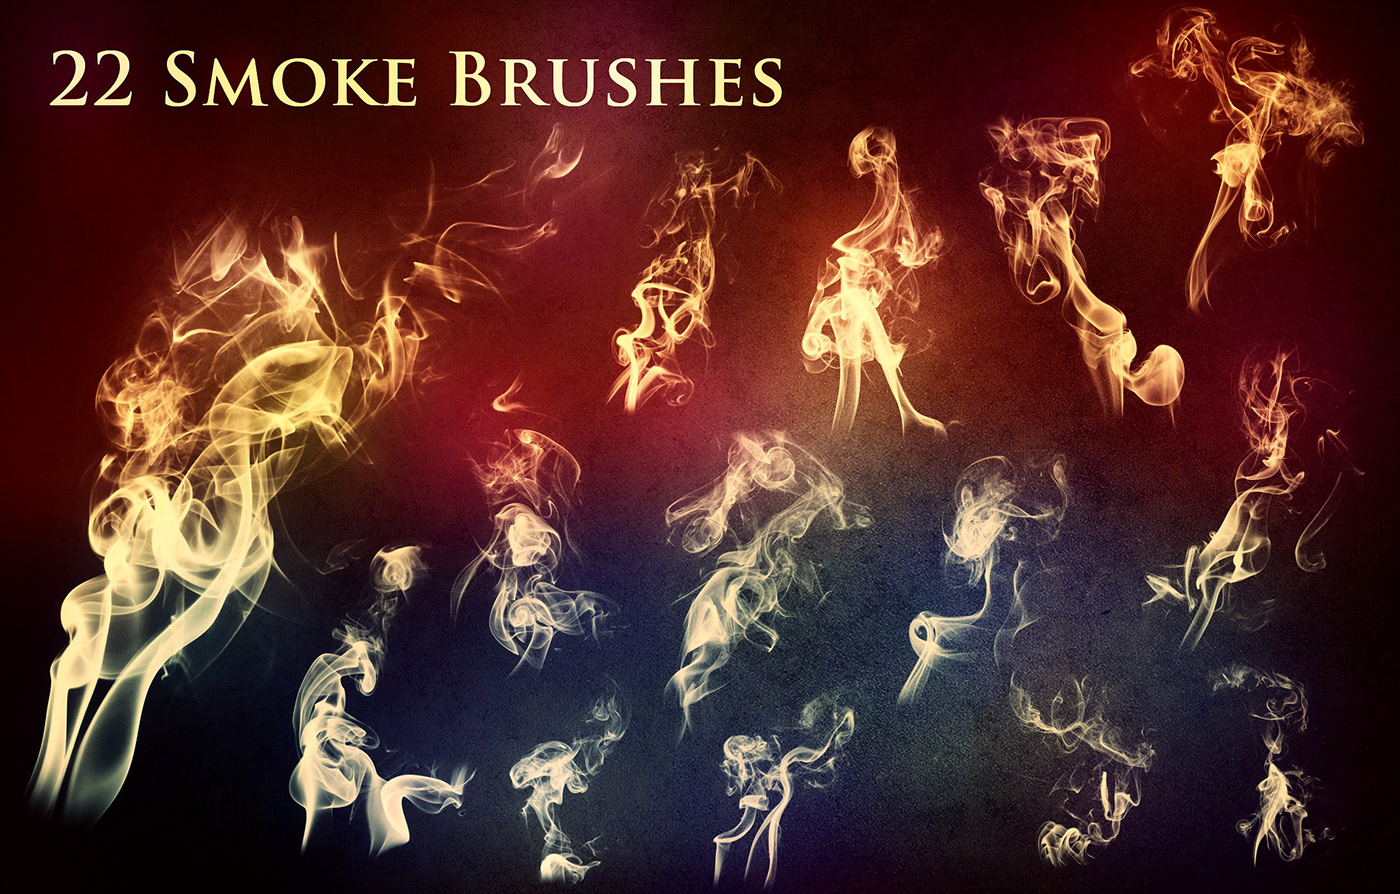 Photoshop brushes smoke brushes fire brushes smoke ps brush fire ps brush free ps brushes free photoshop brushes brush pack